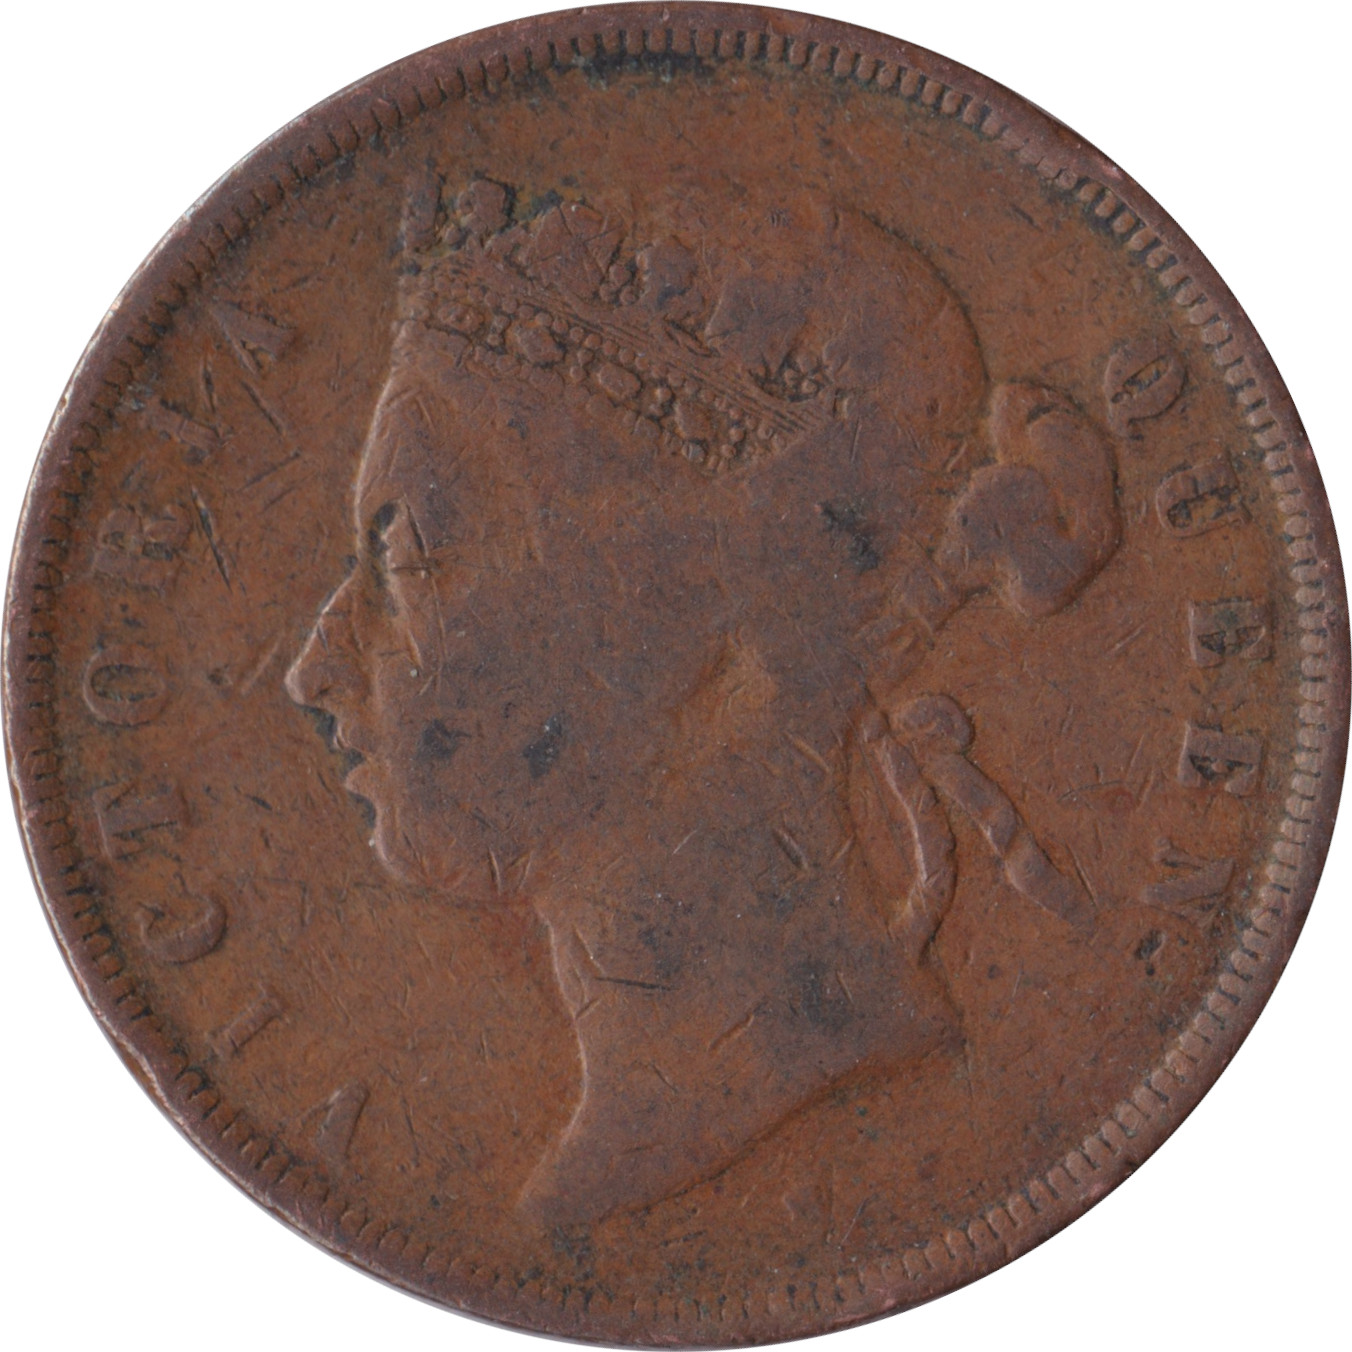 1 cent - Victoria